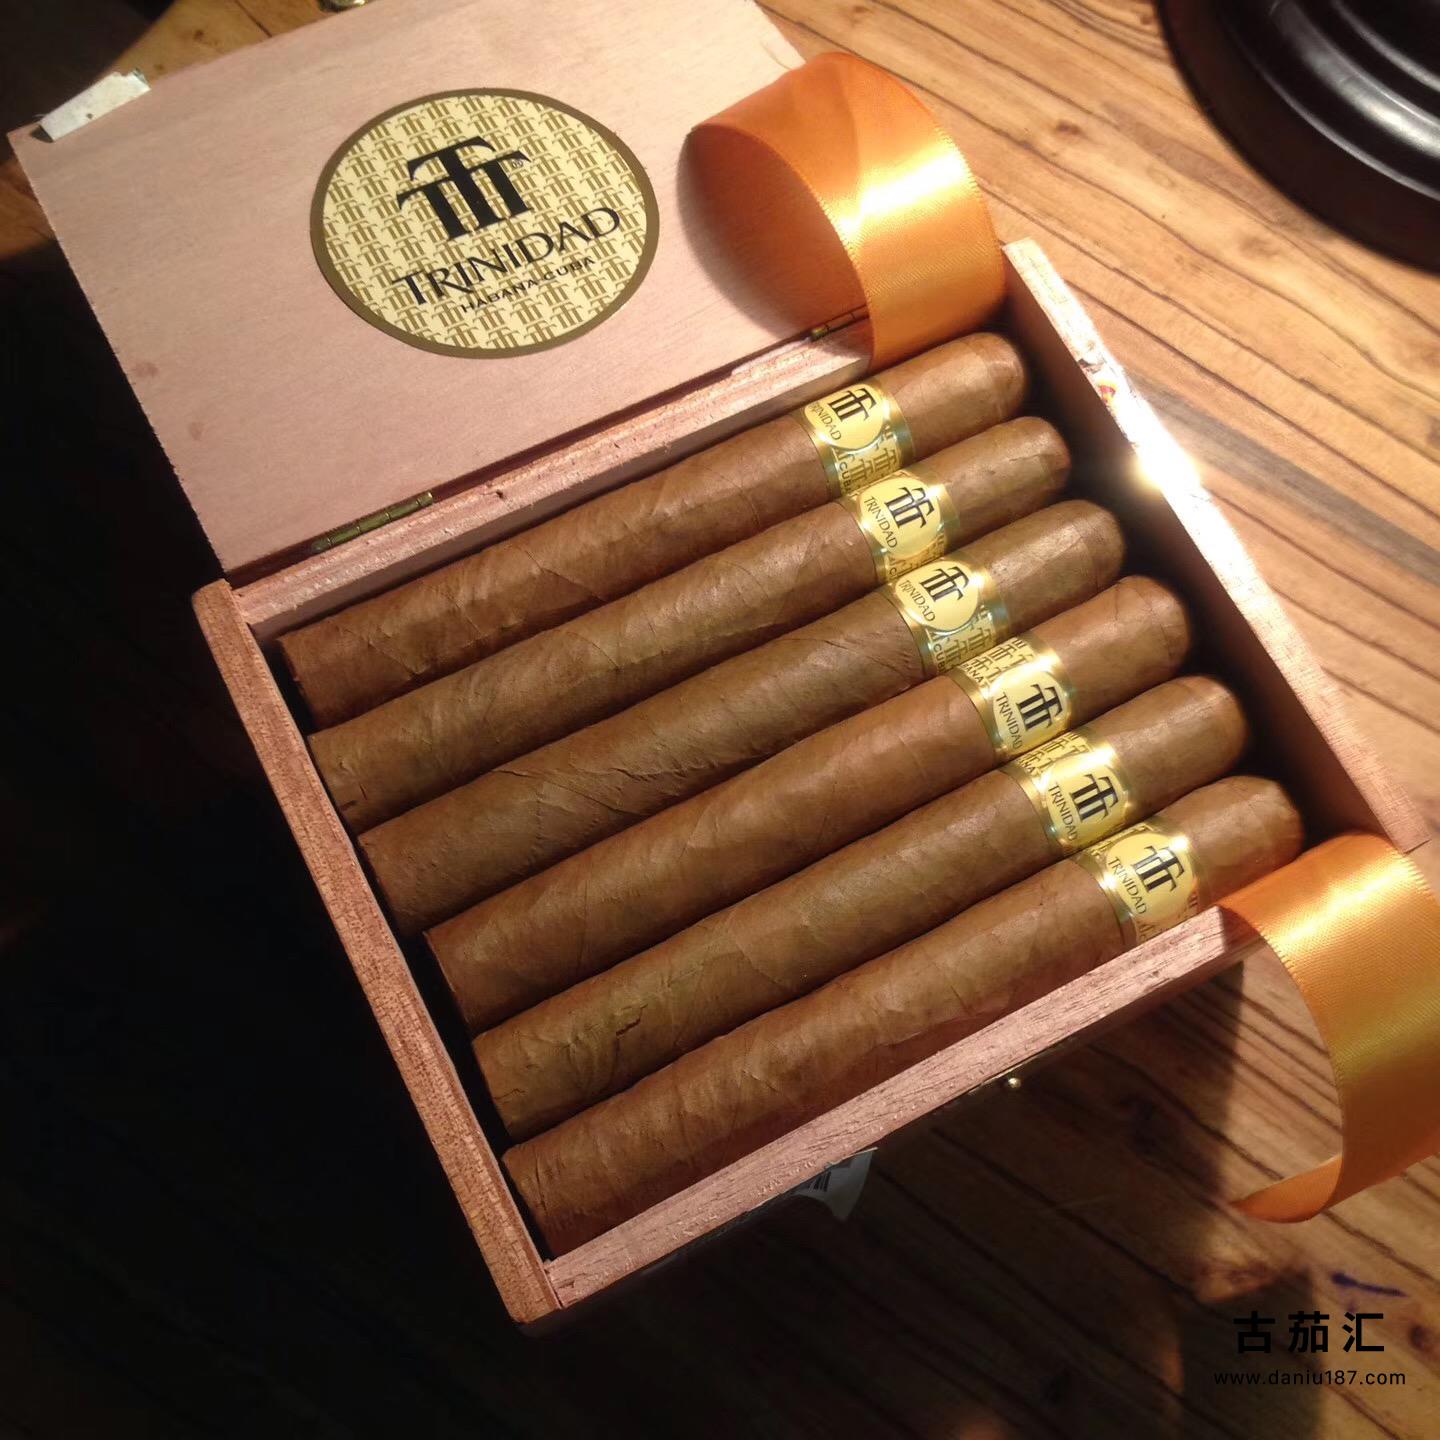 古巴国礼级别的雪茄精品真假识别         千里达戈登